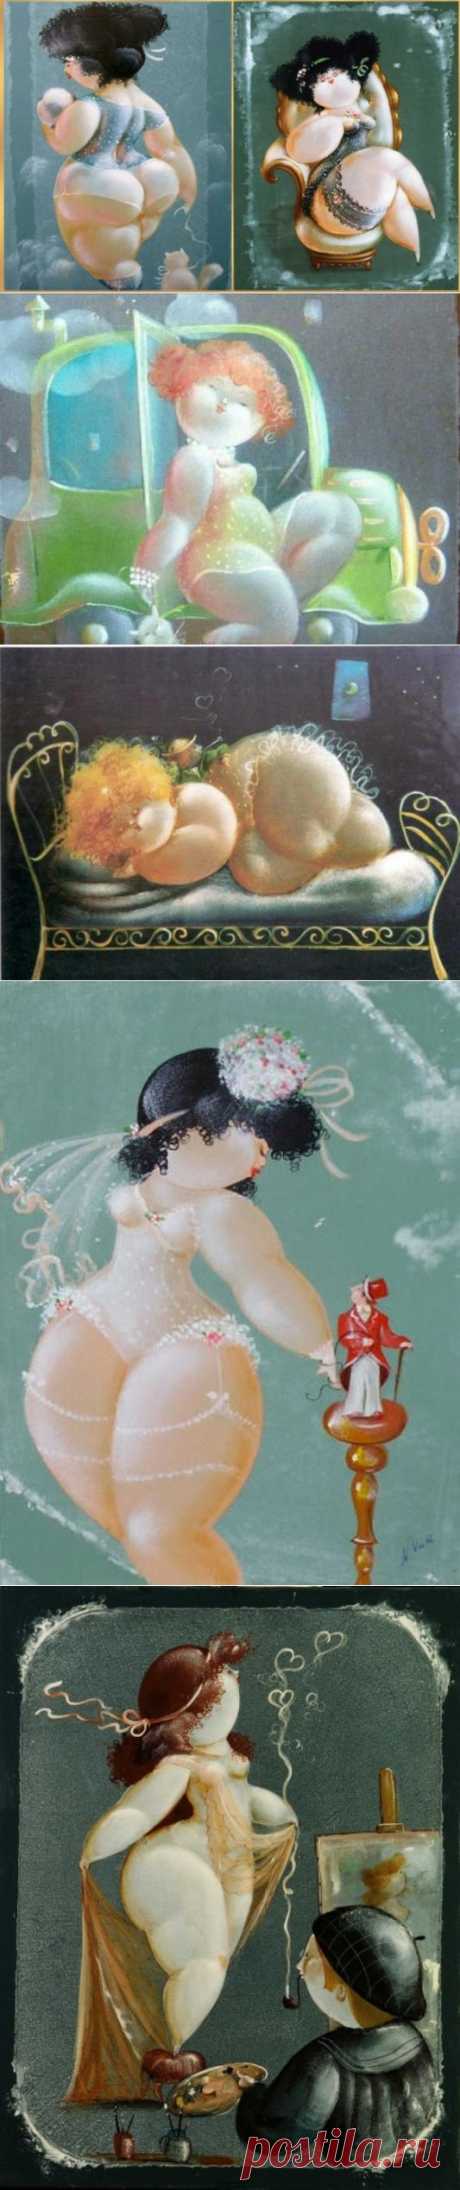 Очаровательные душечки-пампушечки, на картинах итальянского художника